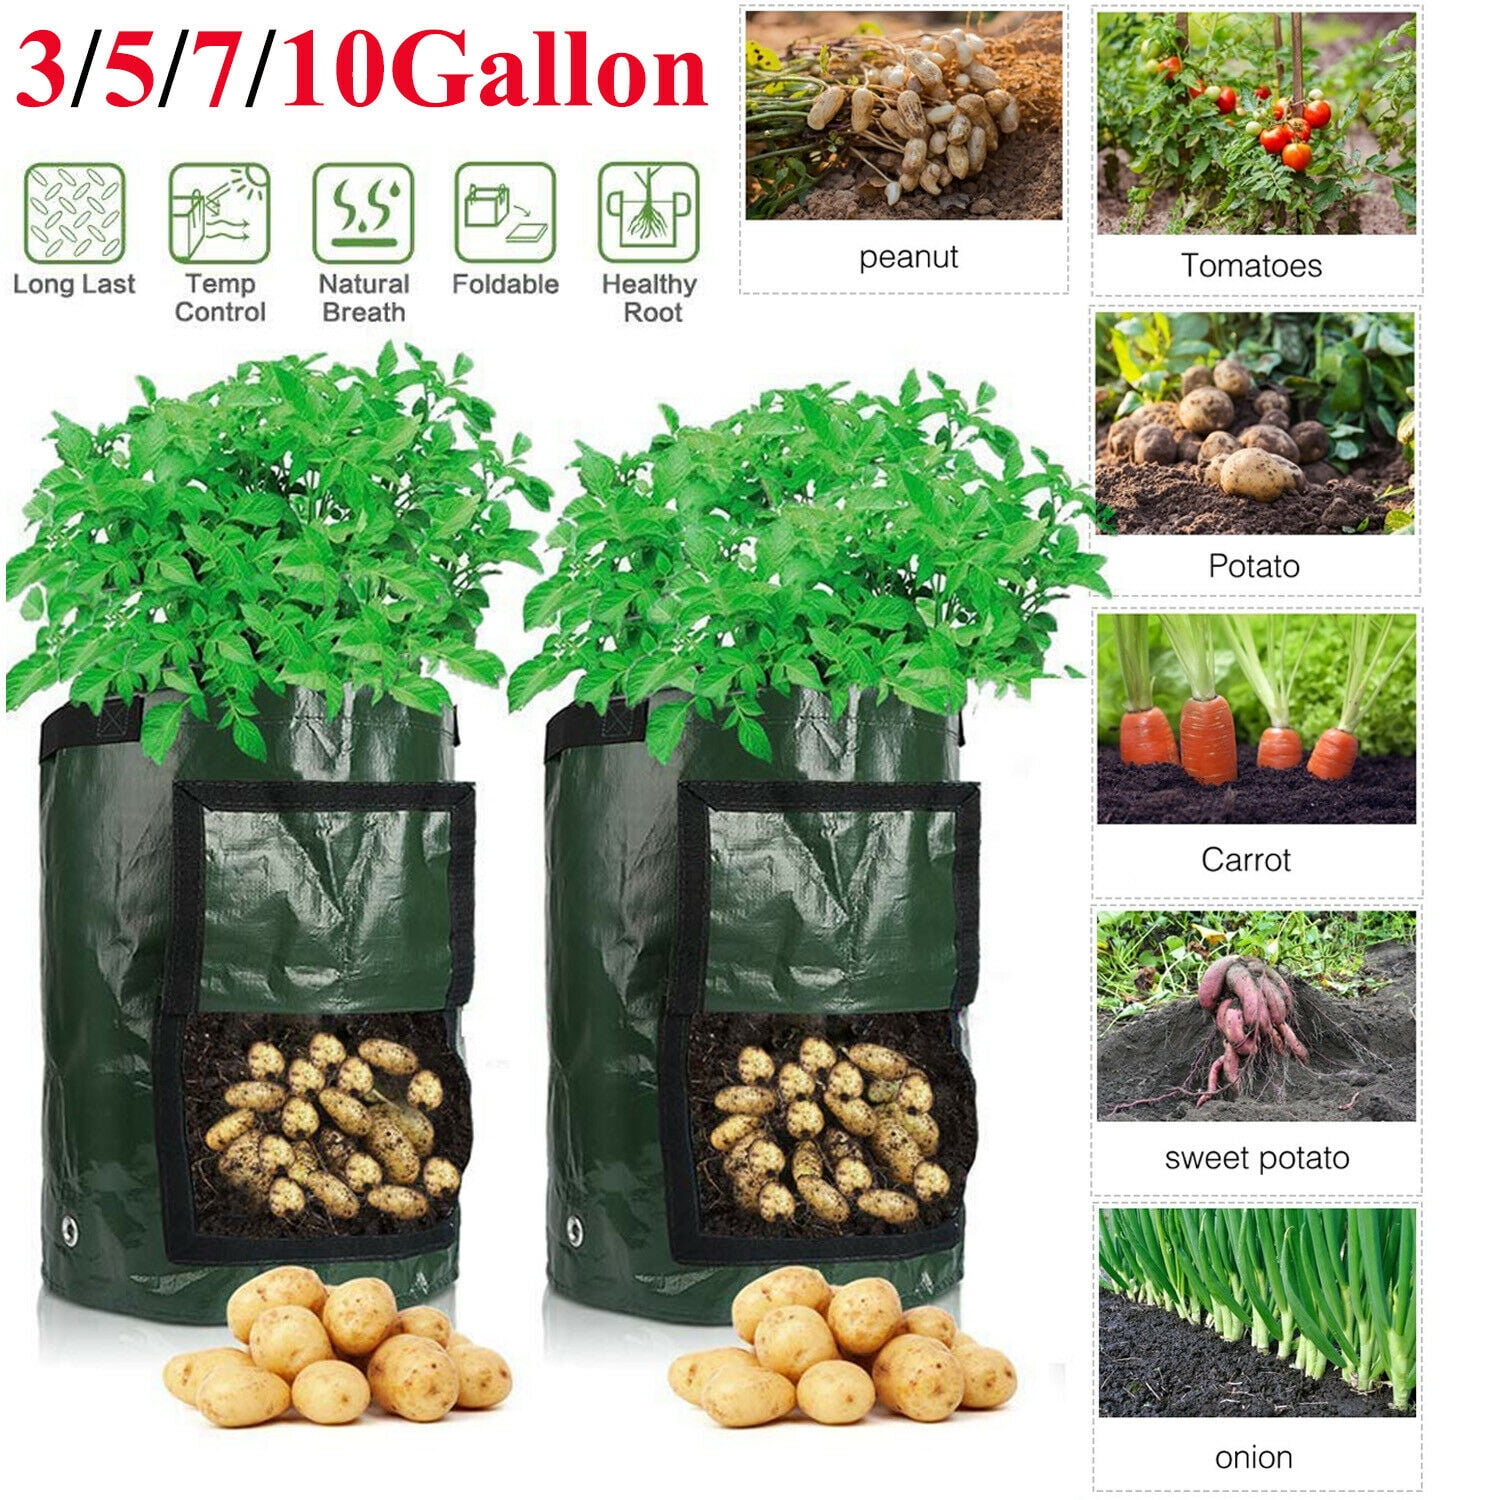 Carrot & Onion Garden Tool Kit Bag Potato Grow Bag Vegetables Planter Bags with Handles for Potato